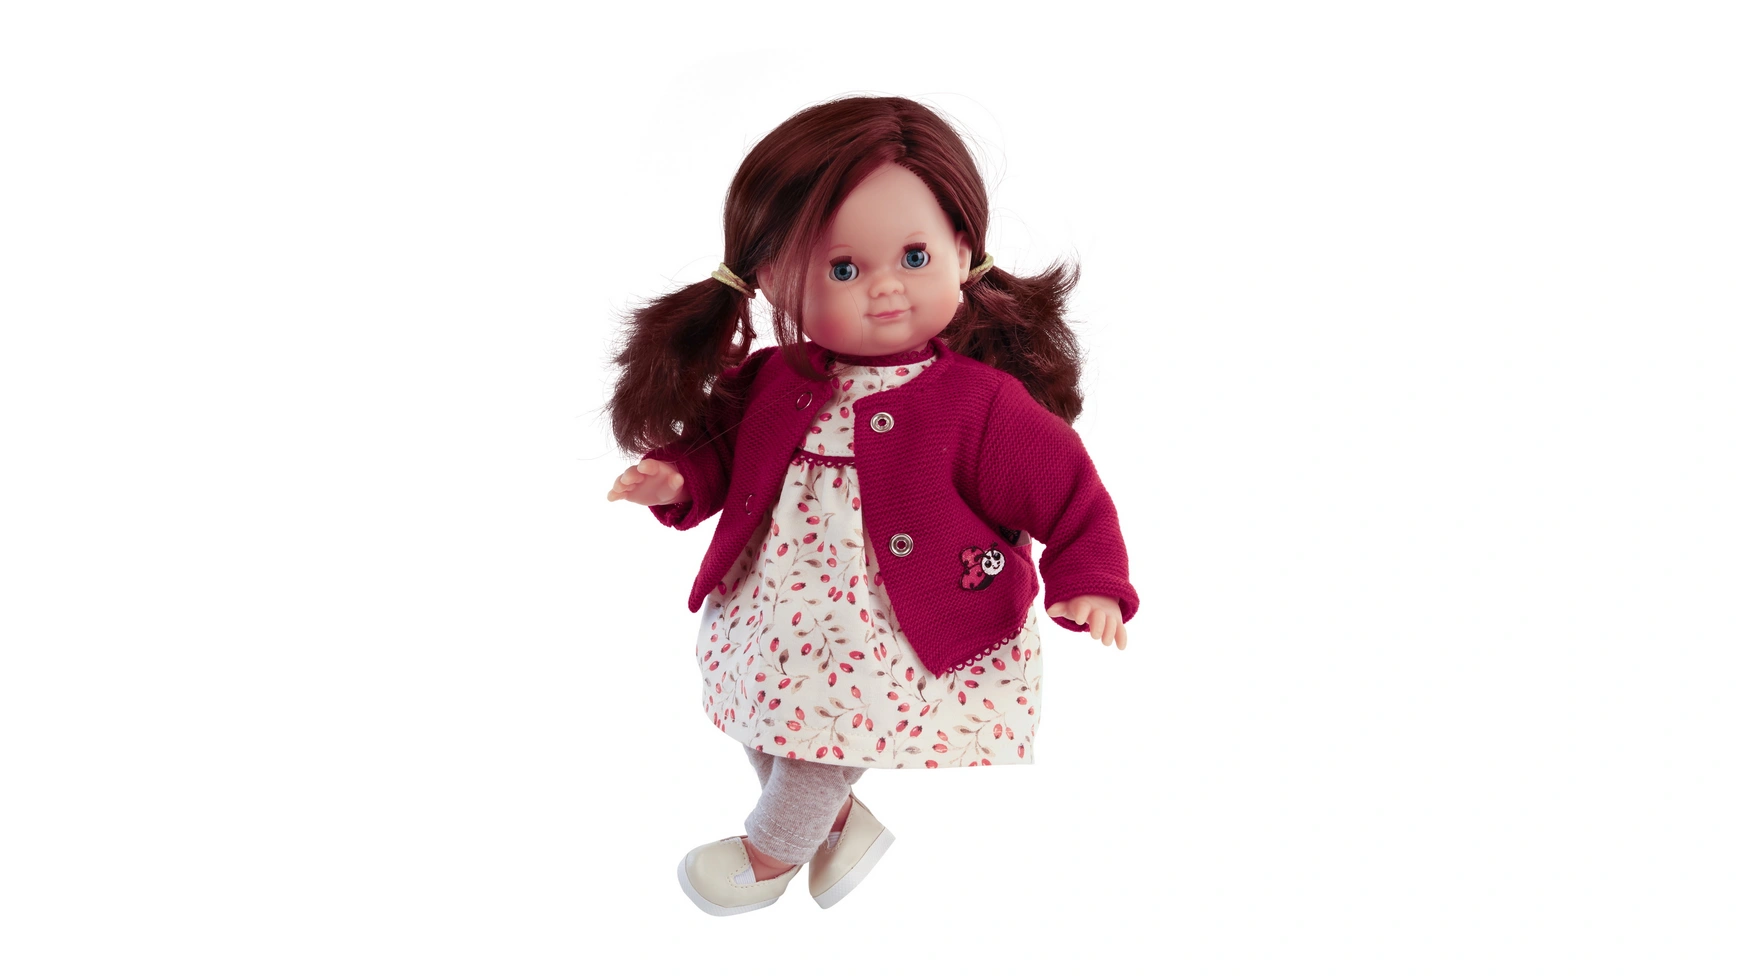 Schildkroet-Puppen Кукла Шлюммерле 32 см каштановые волосы, голубые сонные глаза, одежда из шиповника